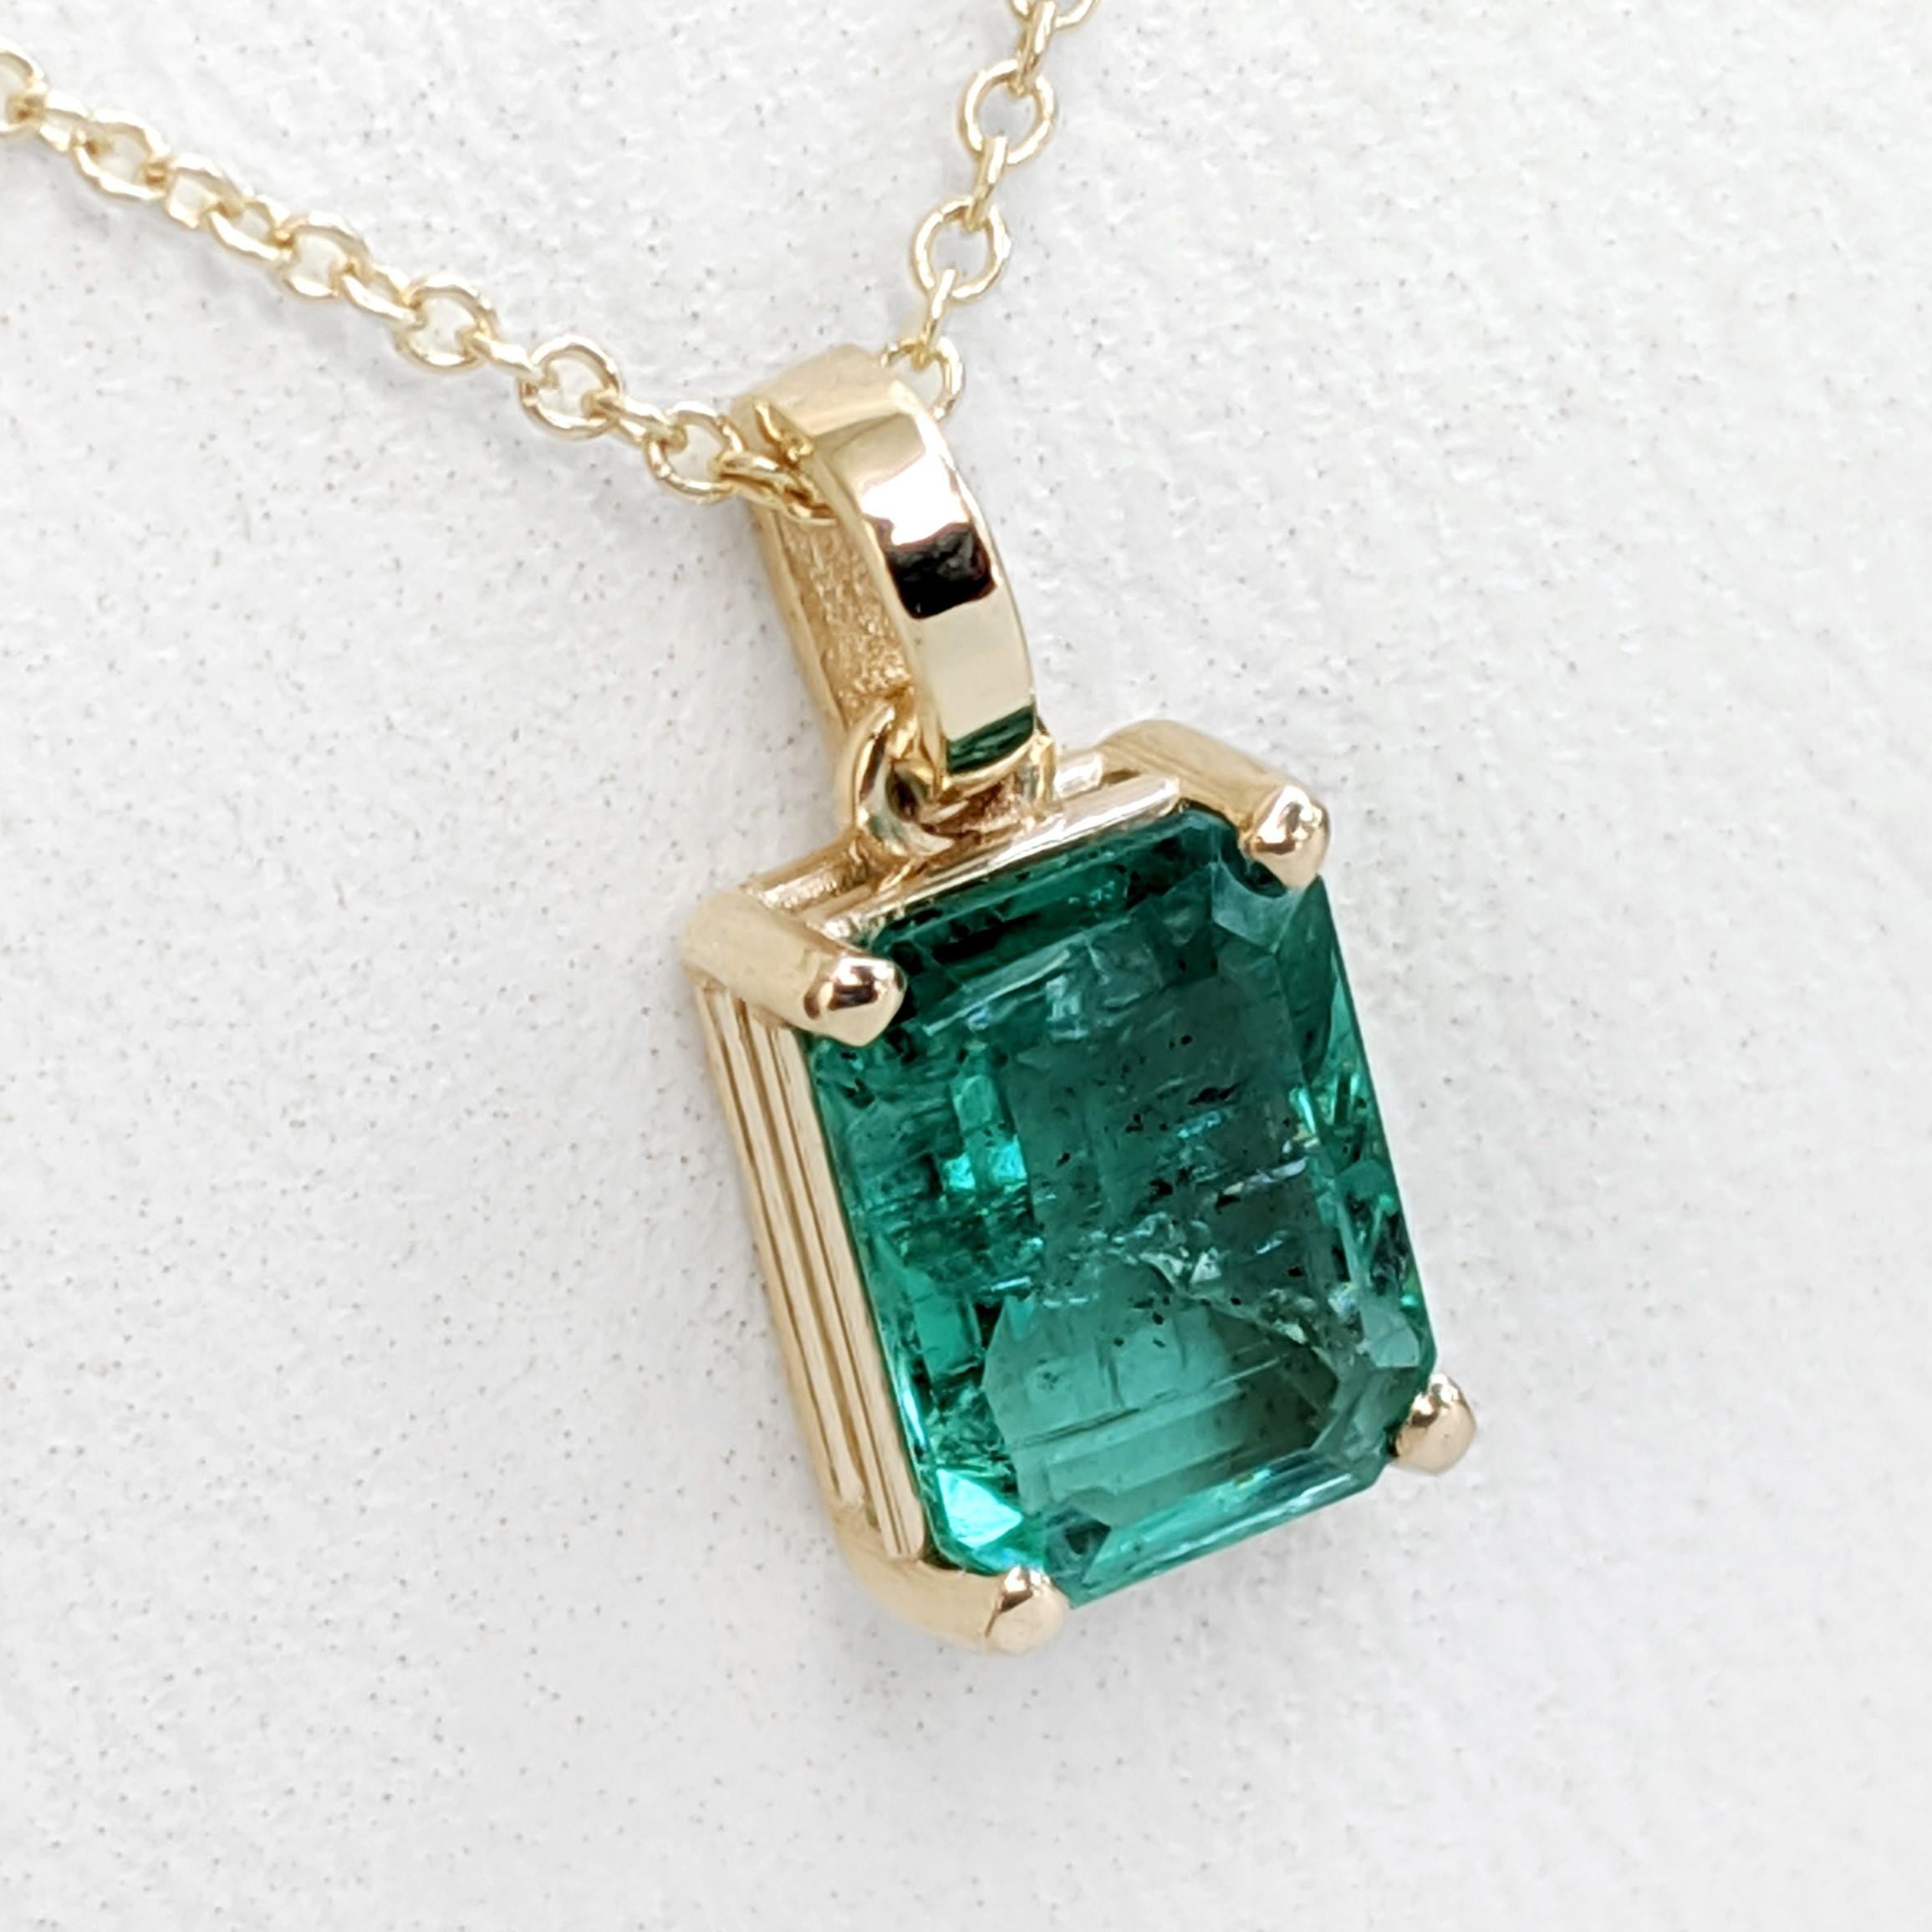 Emerald Cut NO RESERVE! 1.33 Carat Emerald - 14 kt. Gold - Pendant Necklace